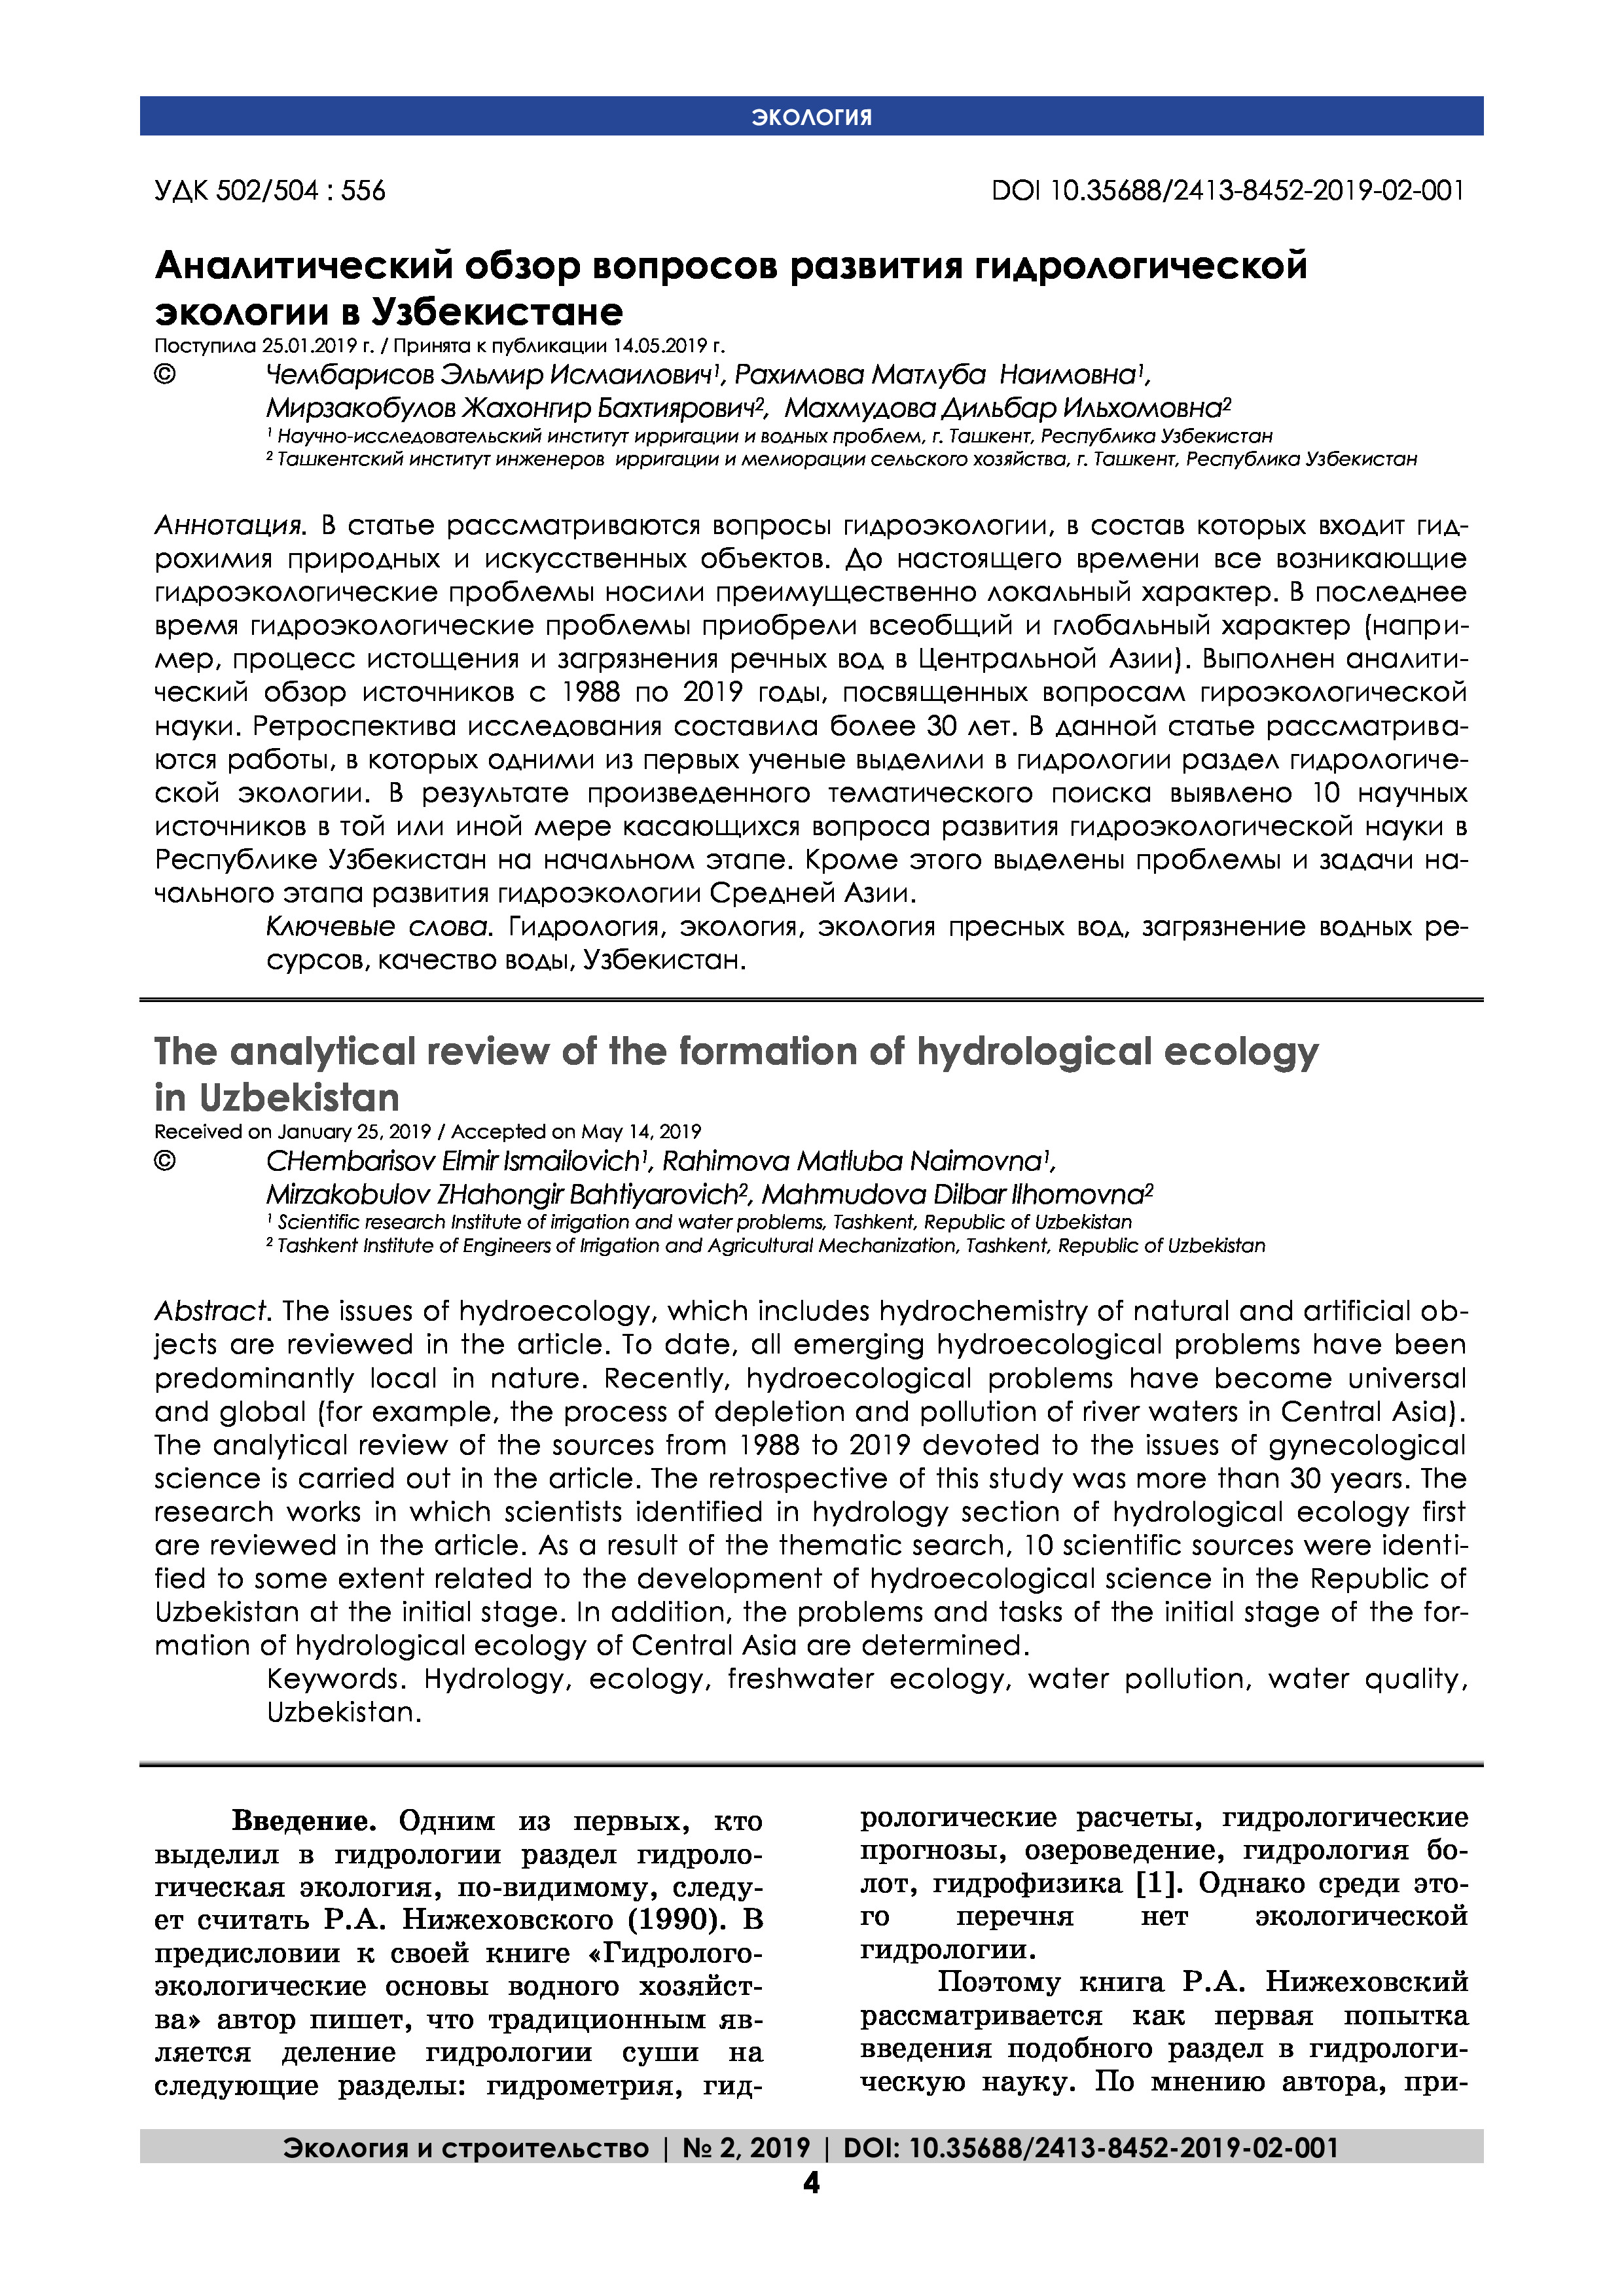 Аналитический обзор вопросов развития гидрологической экологии в Узбекистане | Э.Чембарисов, Дж.Мирзакобулов, М.Рахимова, Д.Махмудова